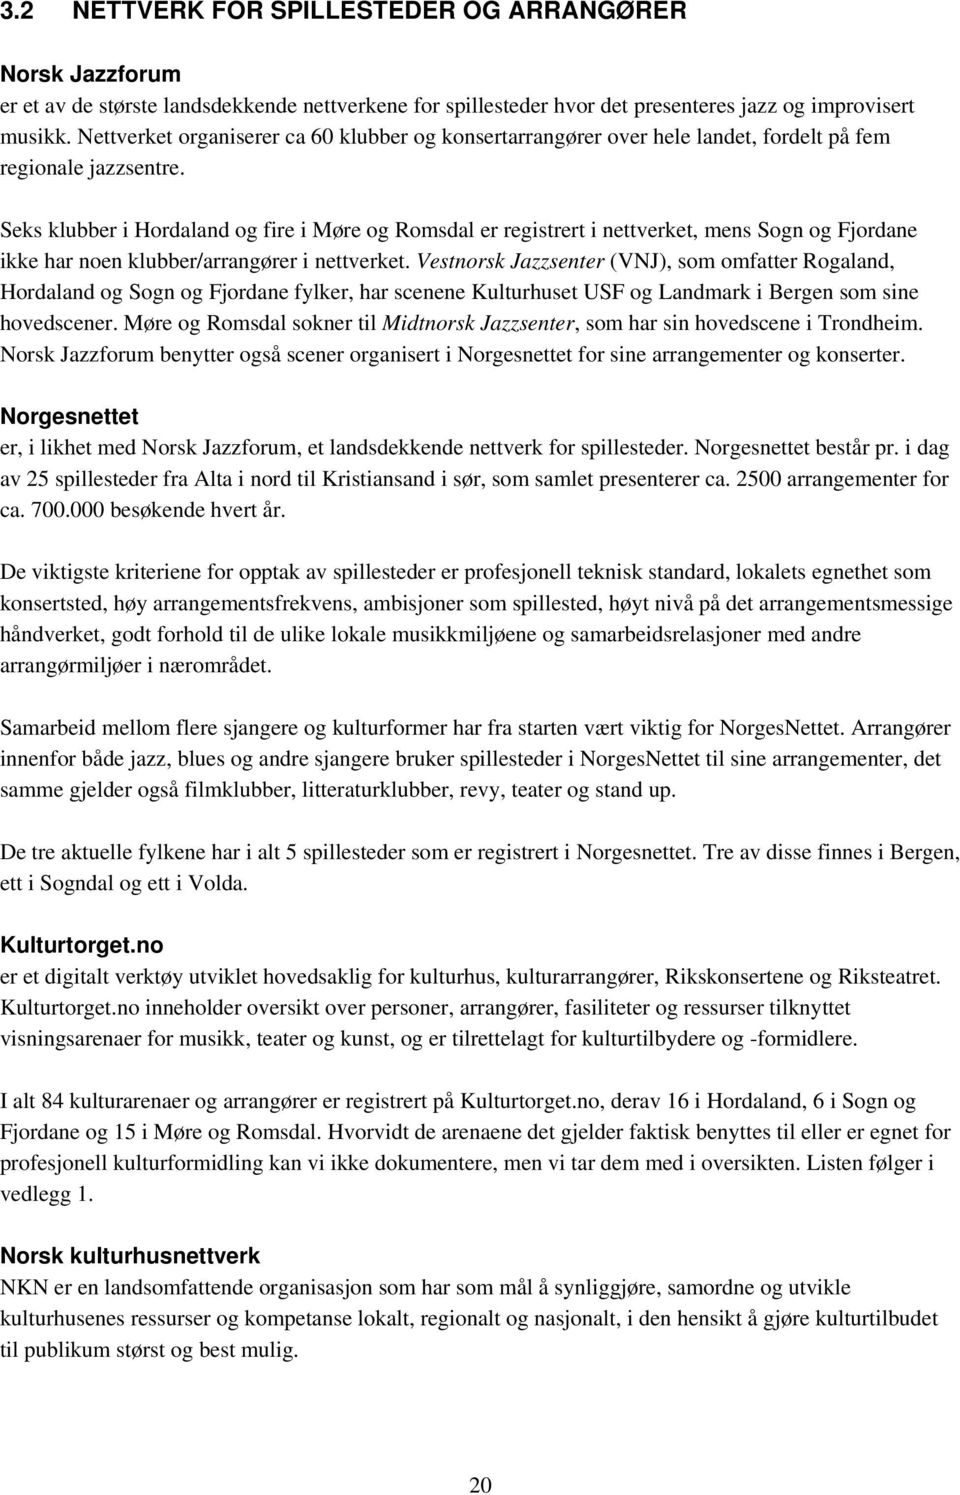 Seks klubber i Hordaland og fire i Møre og Romsdal er registrert i nettverket, mens Sogn og Fjordane ikke har noen klubber/arrangører i nettverket.